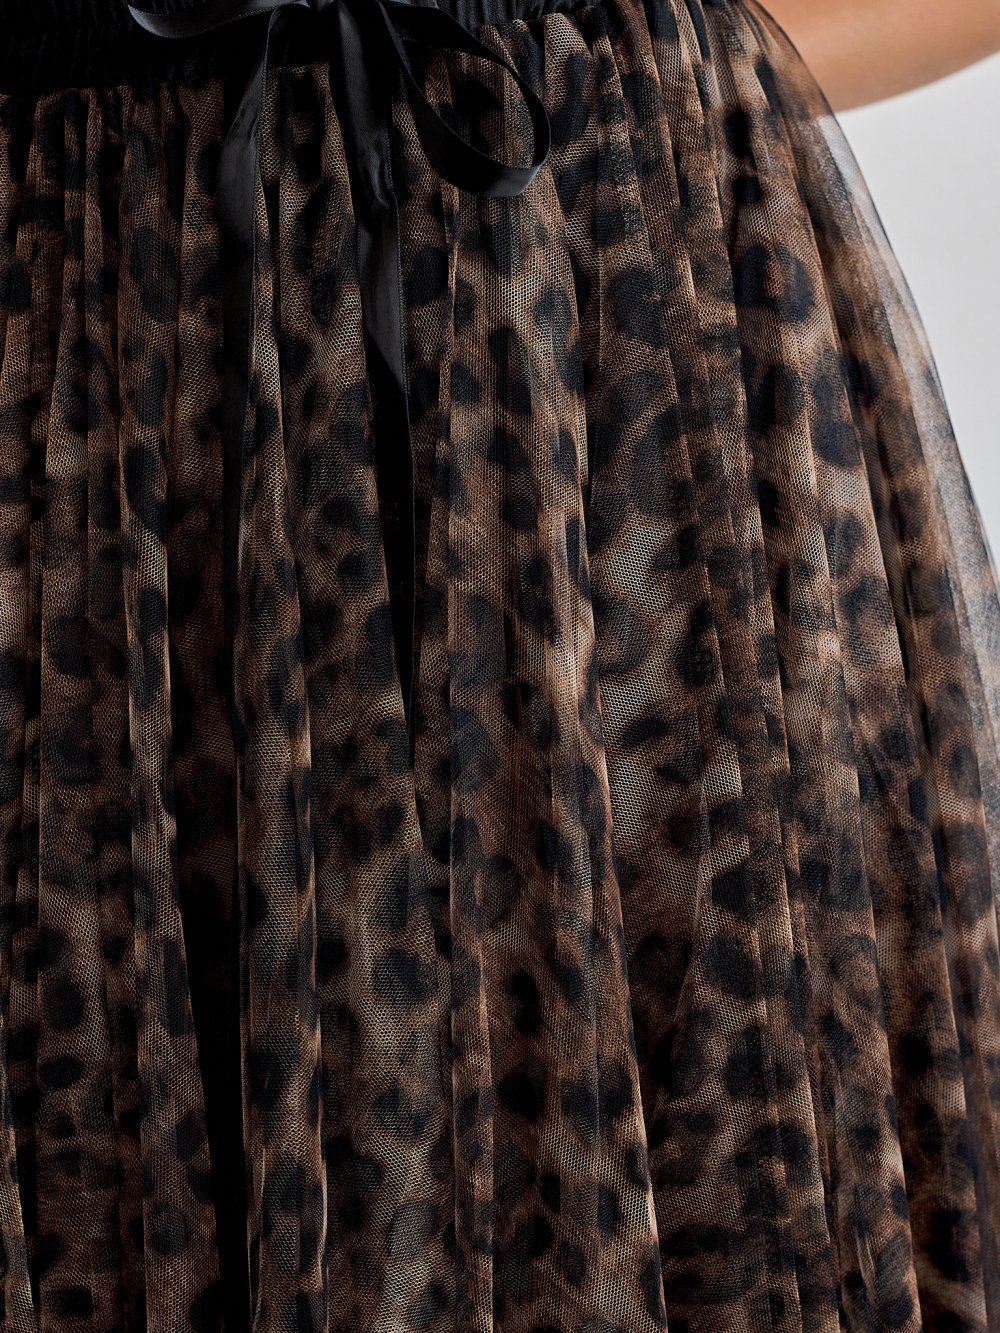 Leopardí tylová sukně Lia